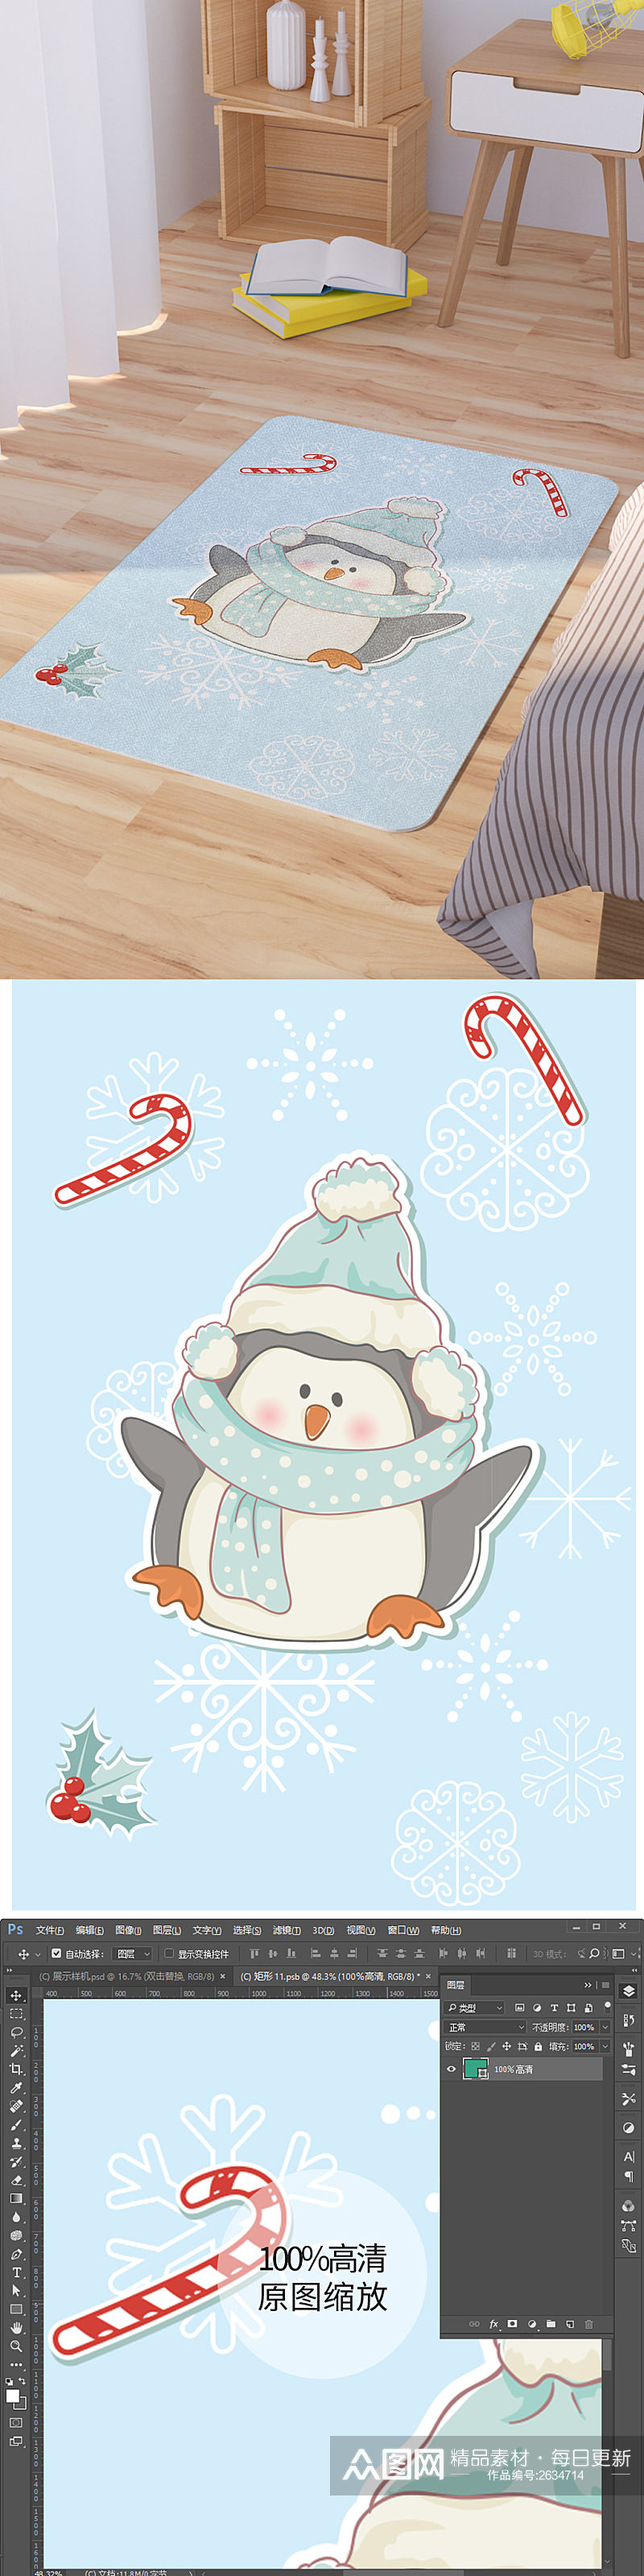 矢量手绘卡通可爱冬季企鹅脚垫地毯图案素材